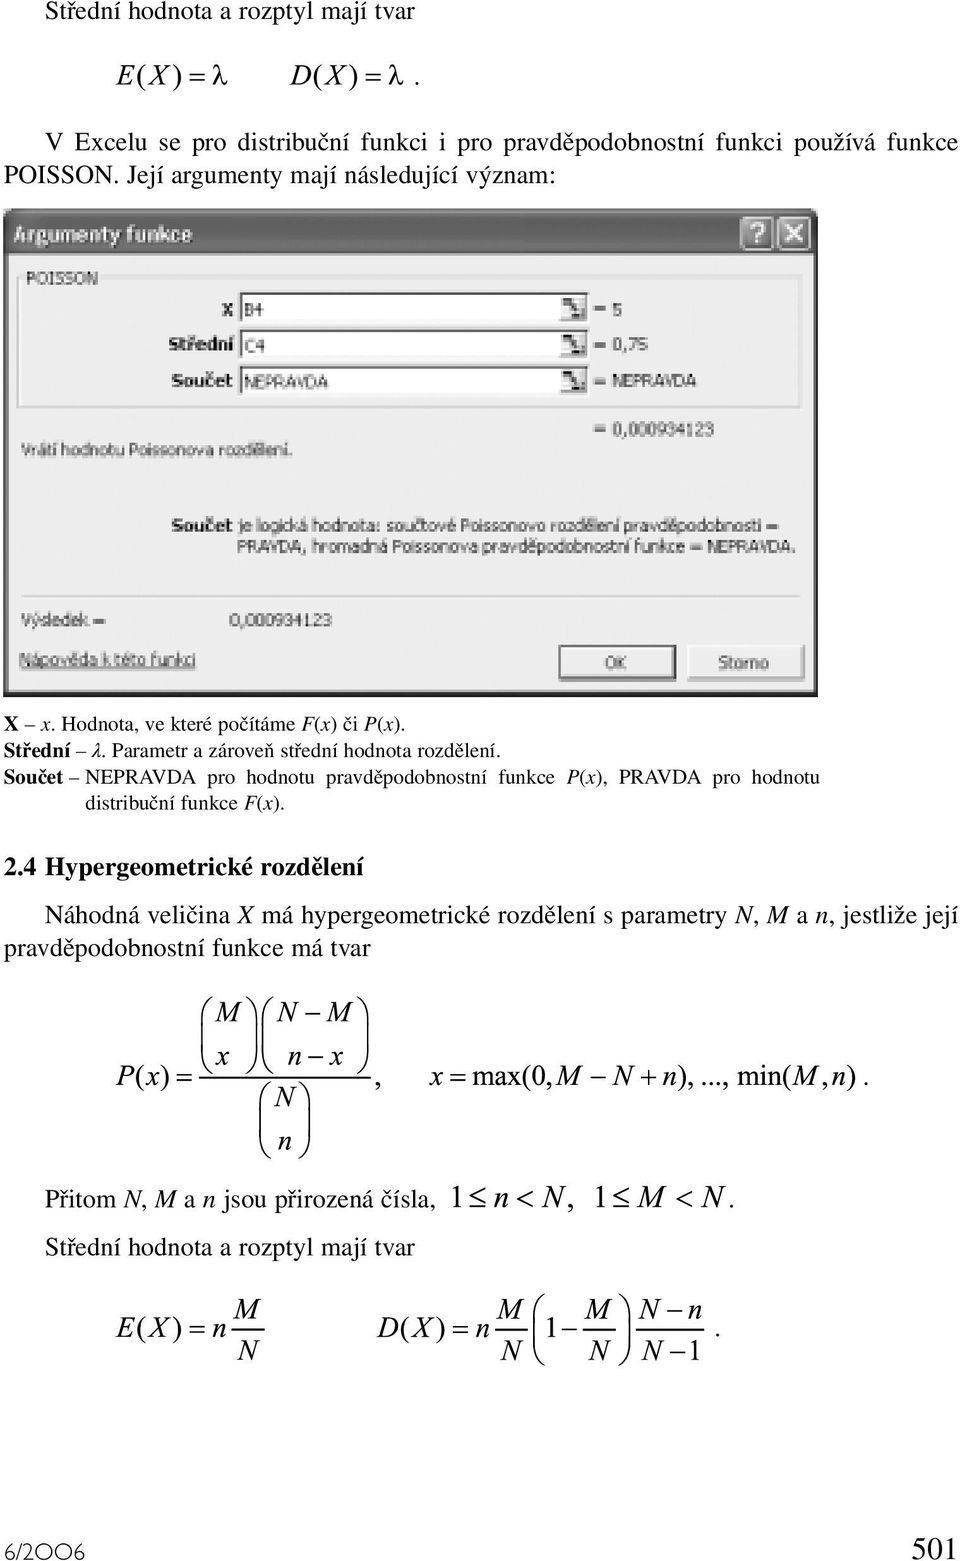 pravděpodobnostní funkce P(x), PRAVDA pro hodnotu distribuční funkce F(x) 24 Hypergeometrické rozdělení Náhodná veličina X má hypergeometrické